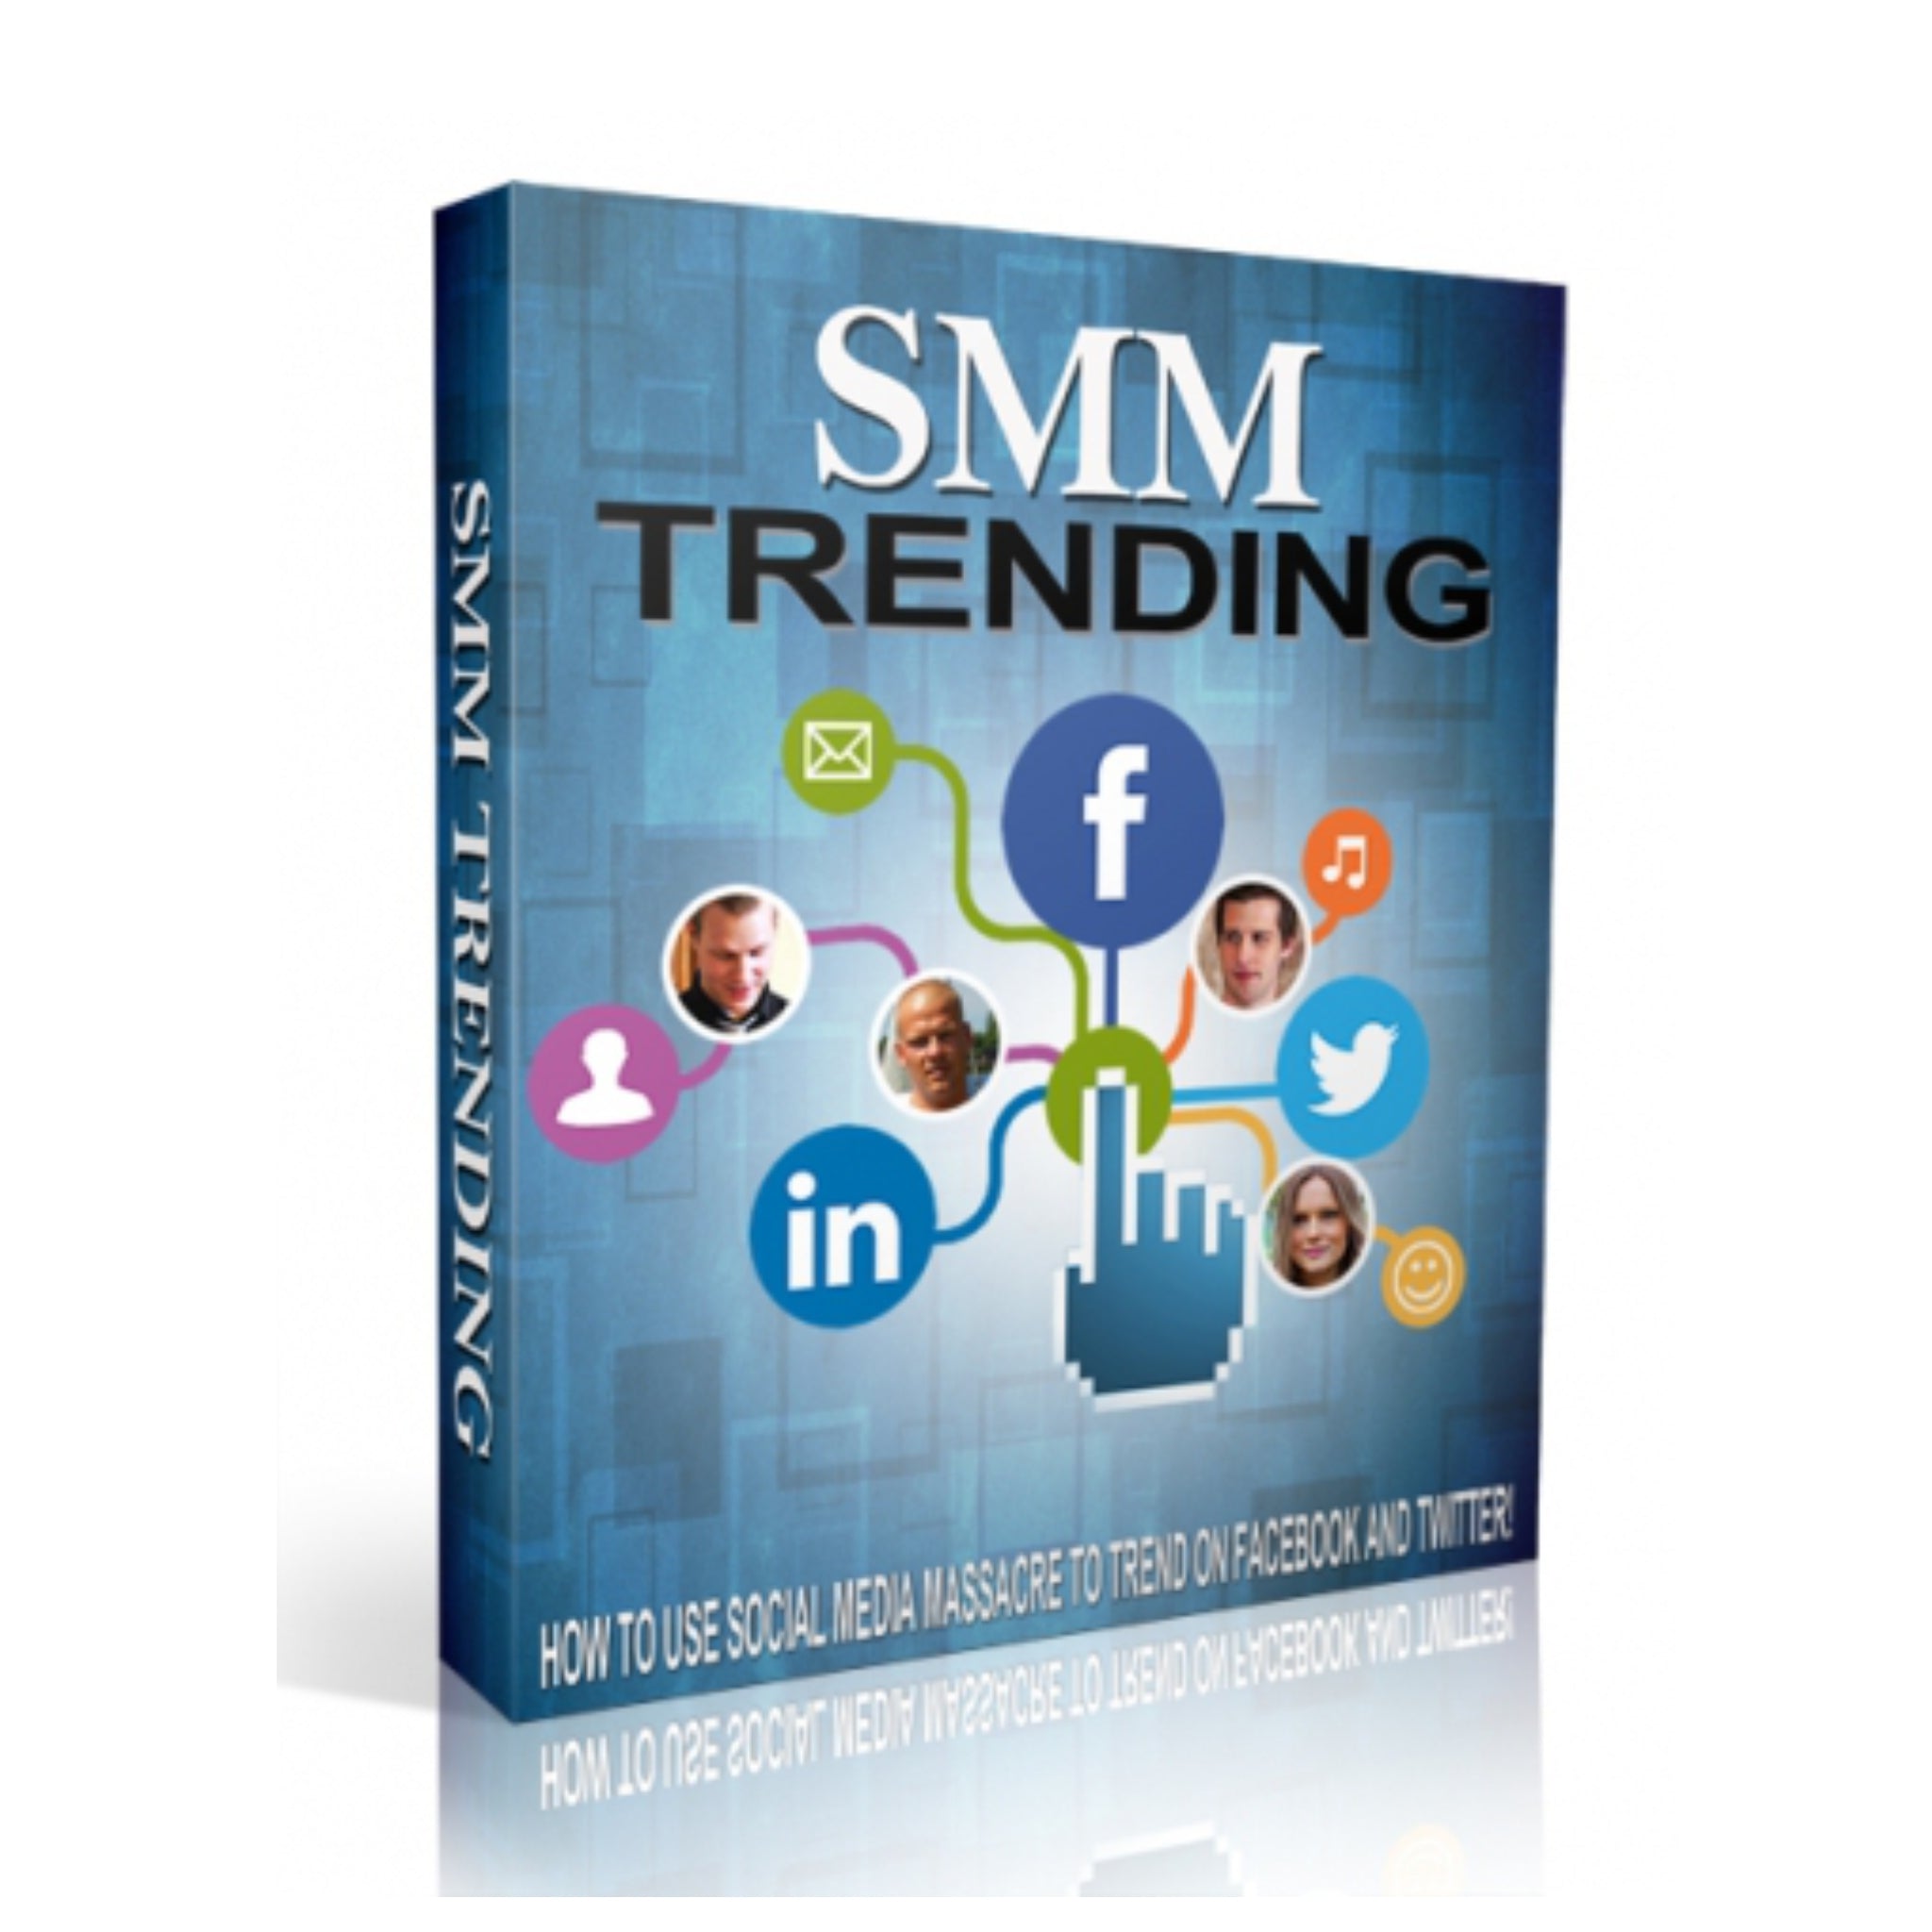 SMM Trending Video Guide